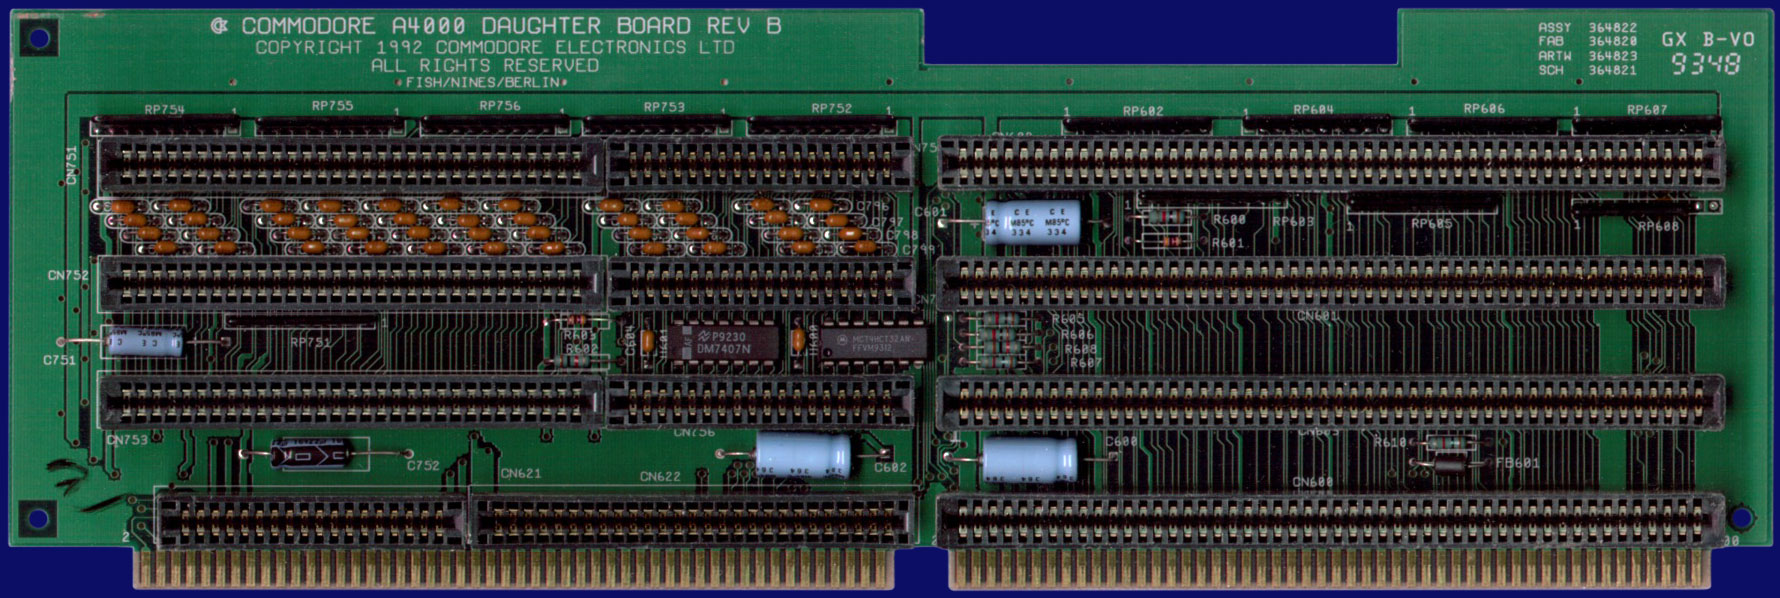 Commodore Amiga 4000 - Rev B daughter board, front side